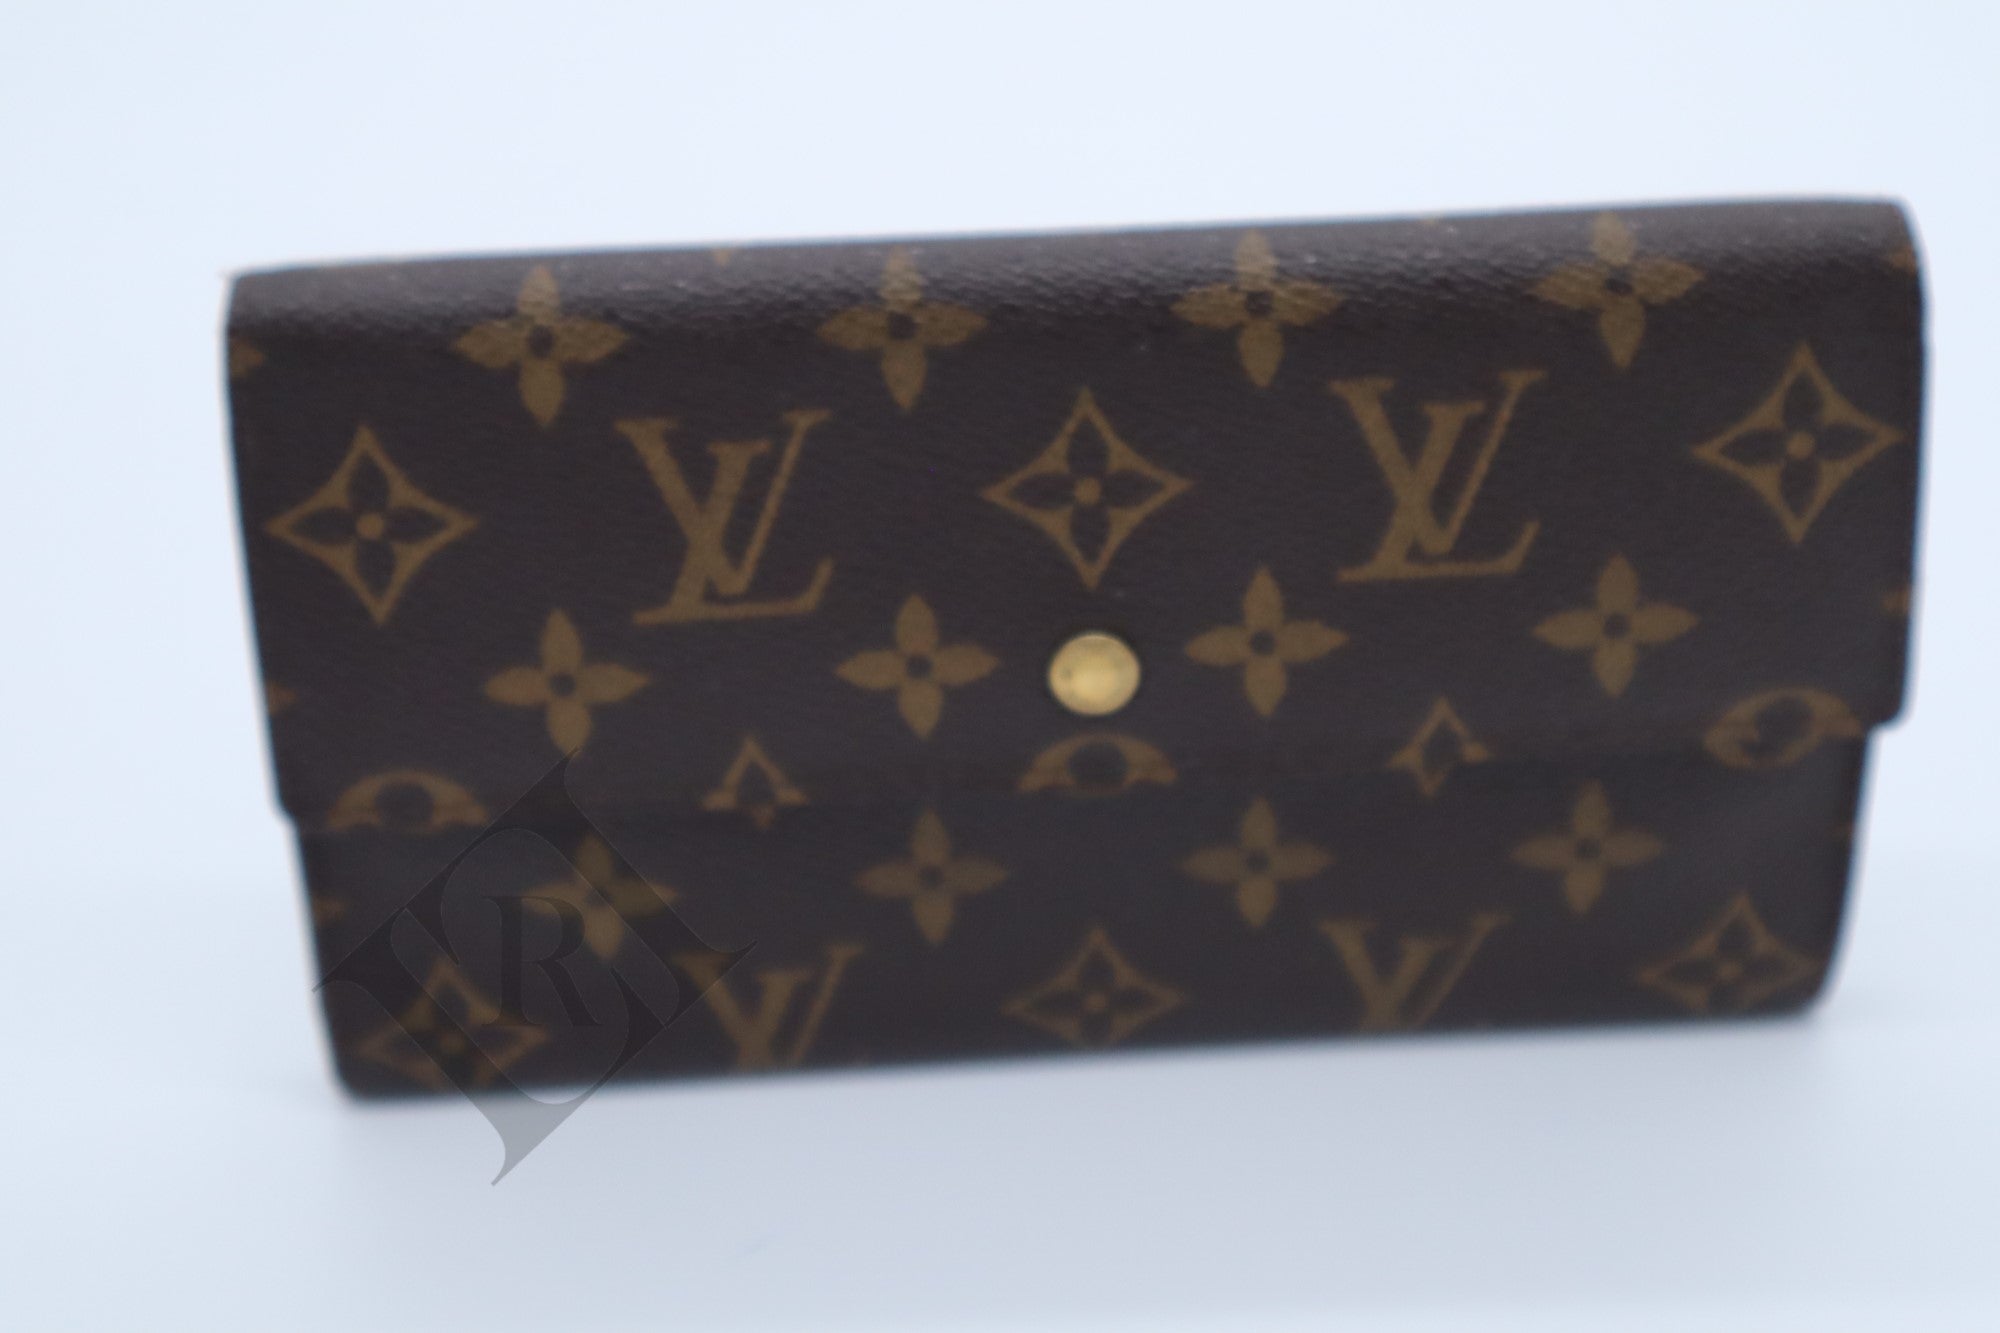 2000 authentic Louis Vuitton international wallet